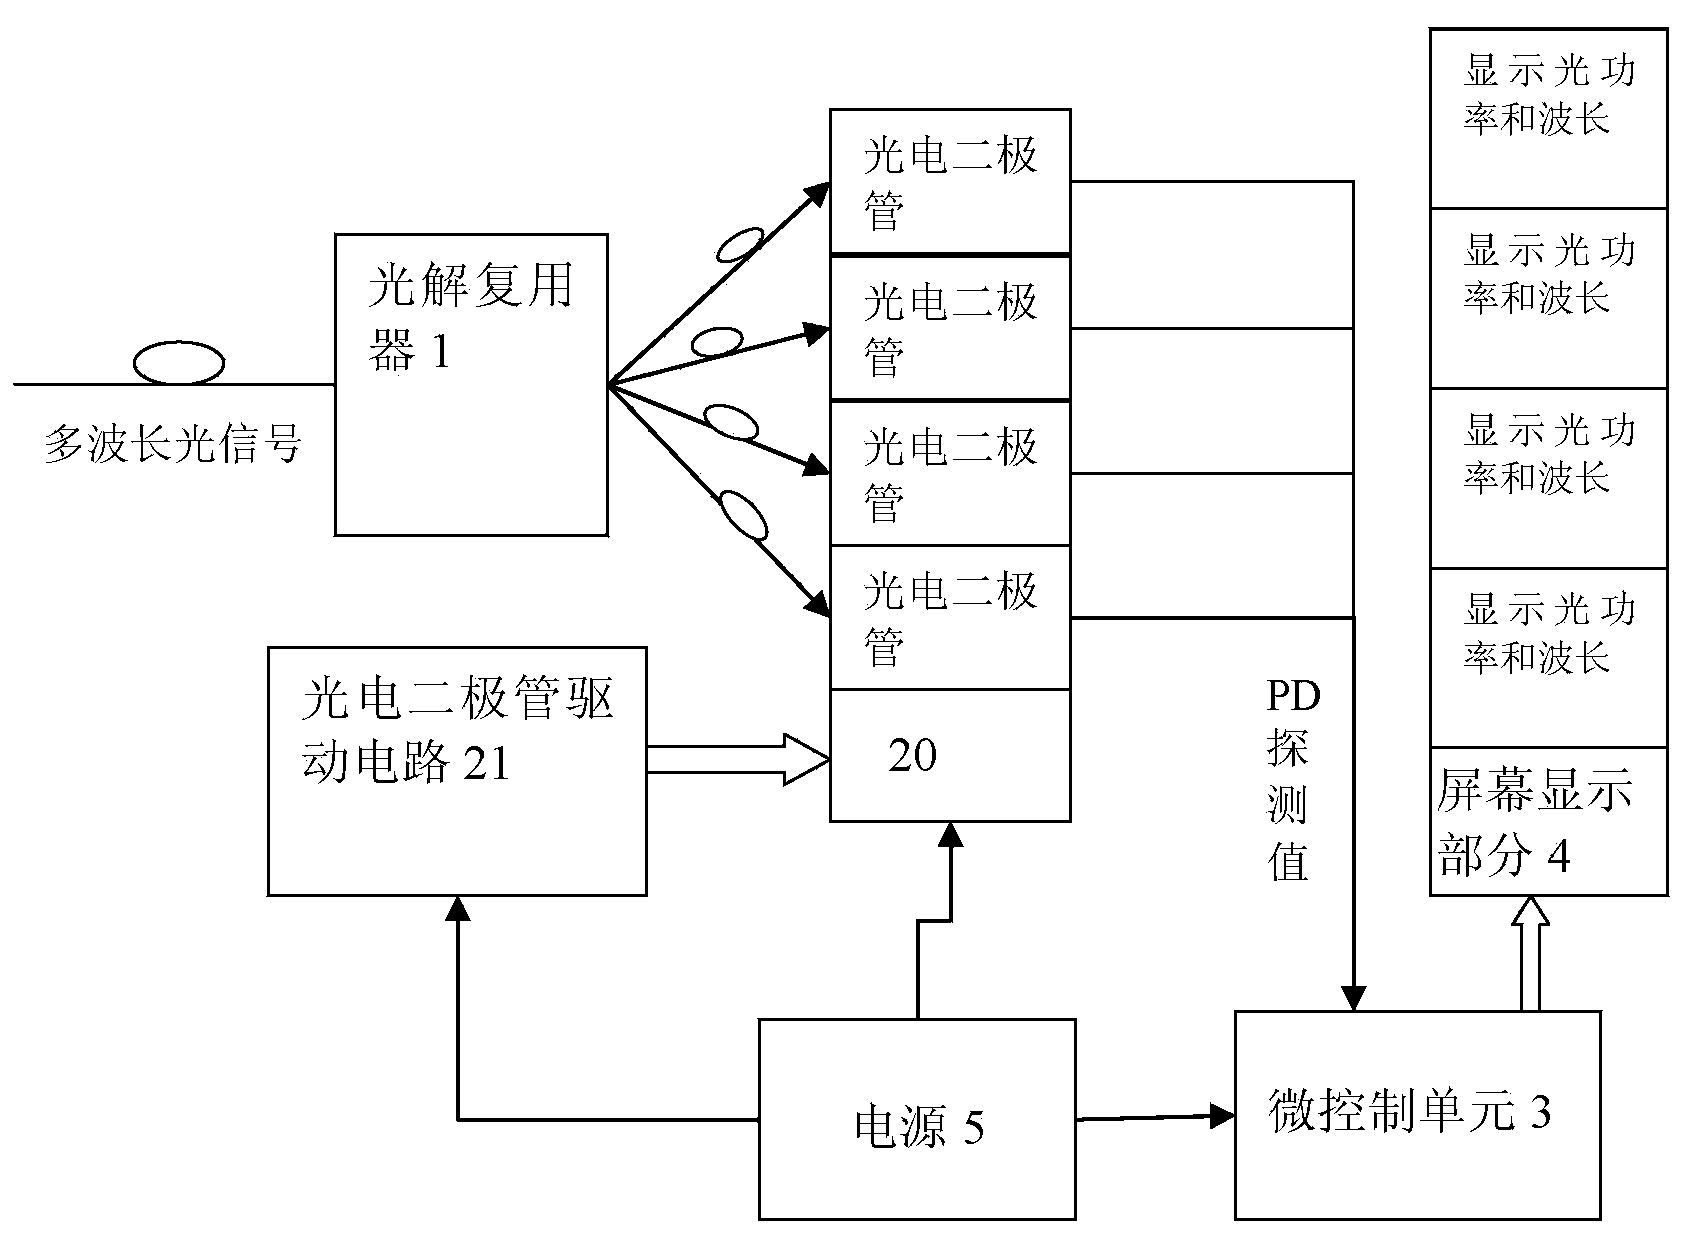 Optical power meter based on LAN-WDM wave band